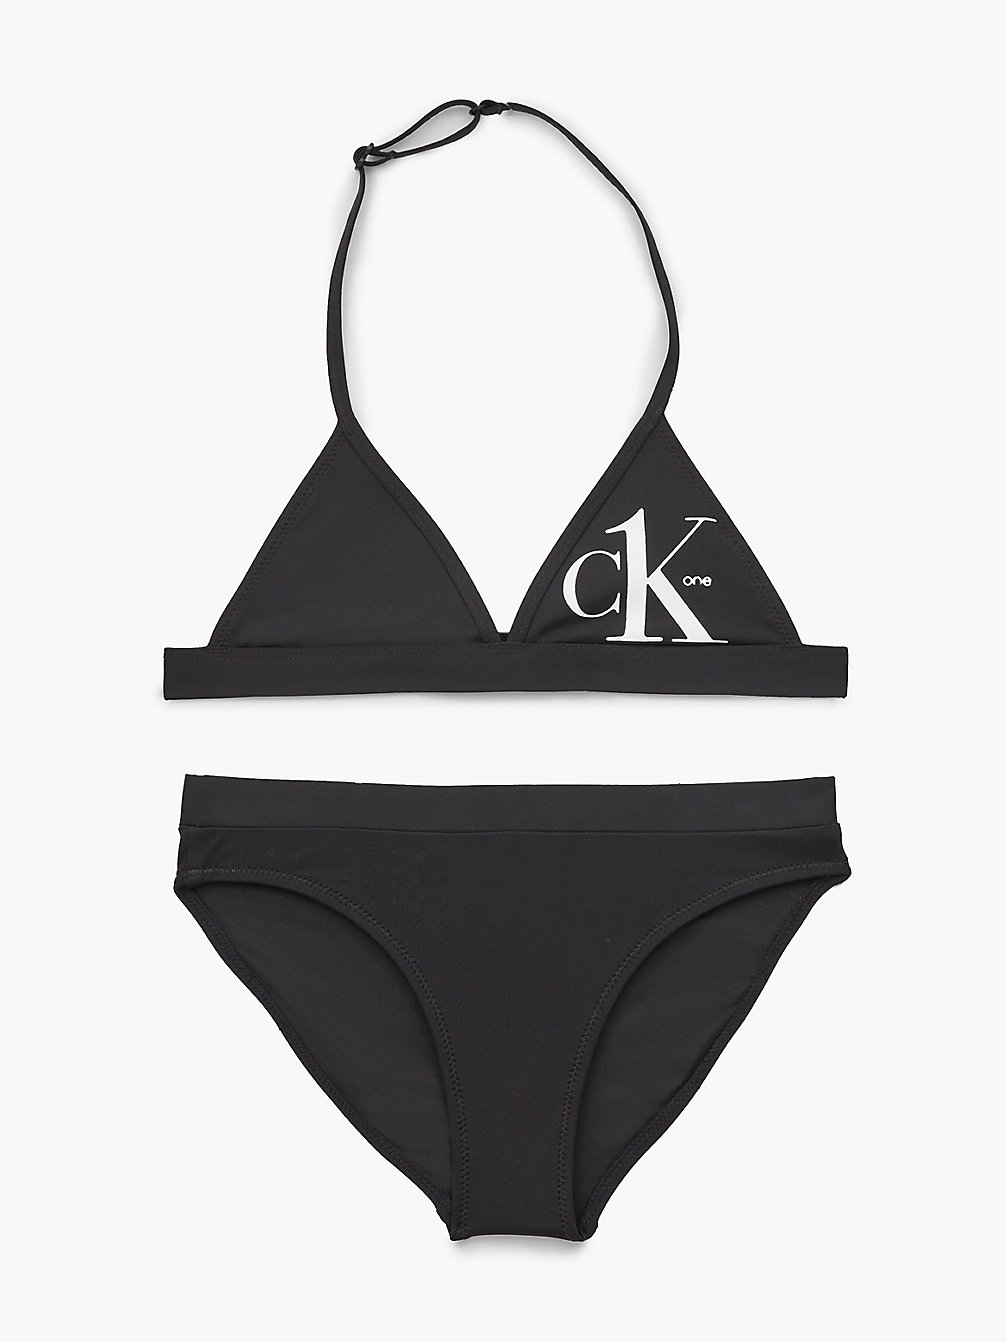 PVH BLACK Bikini-Set Mit Triangel-Top Für Mädchen - CK One undefined Maedchen Calvin Klein